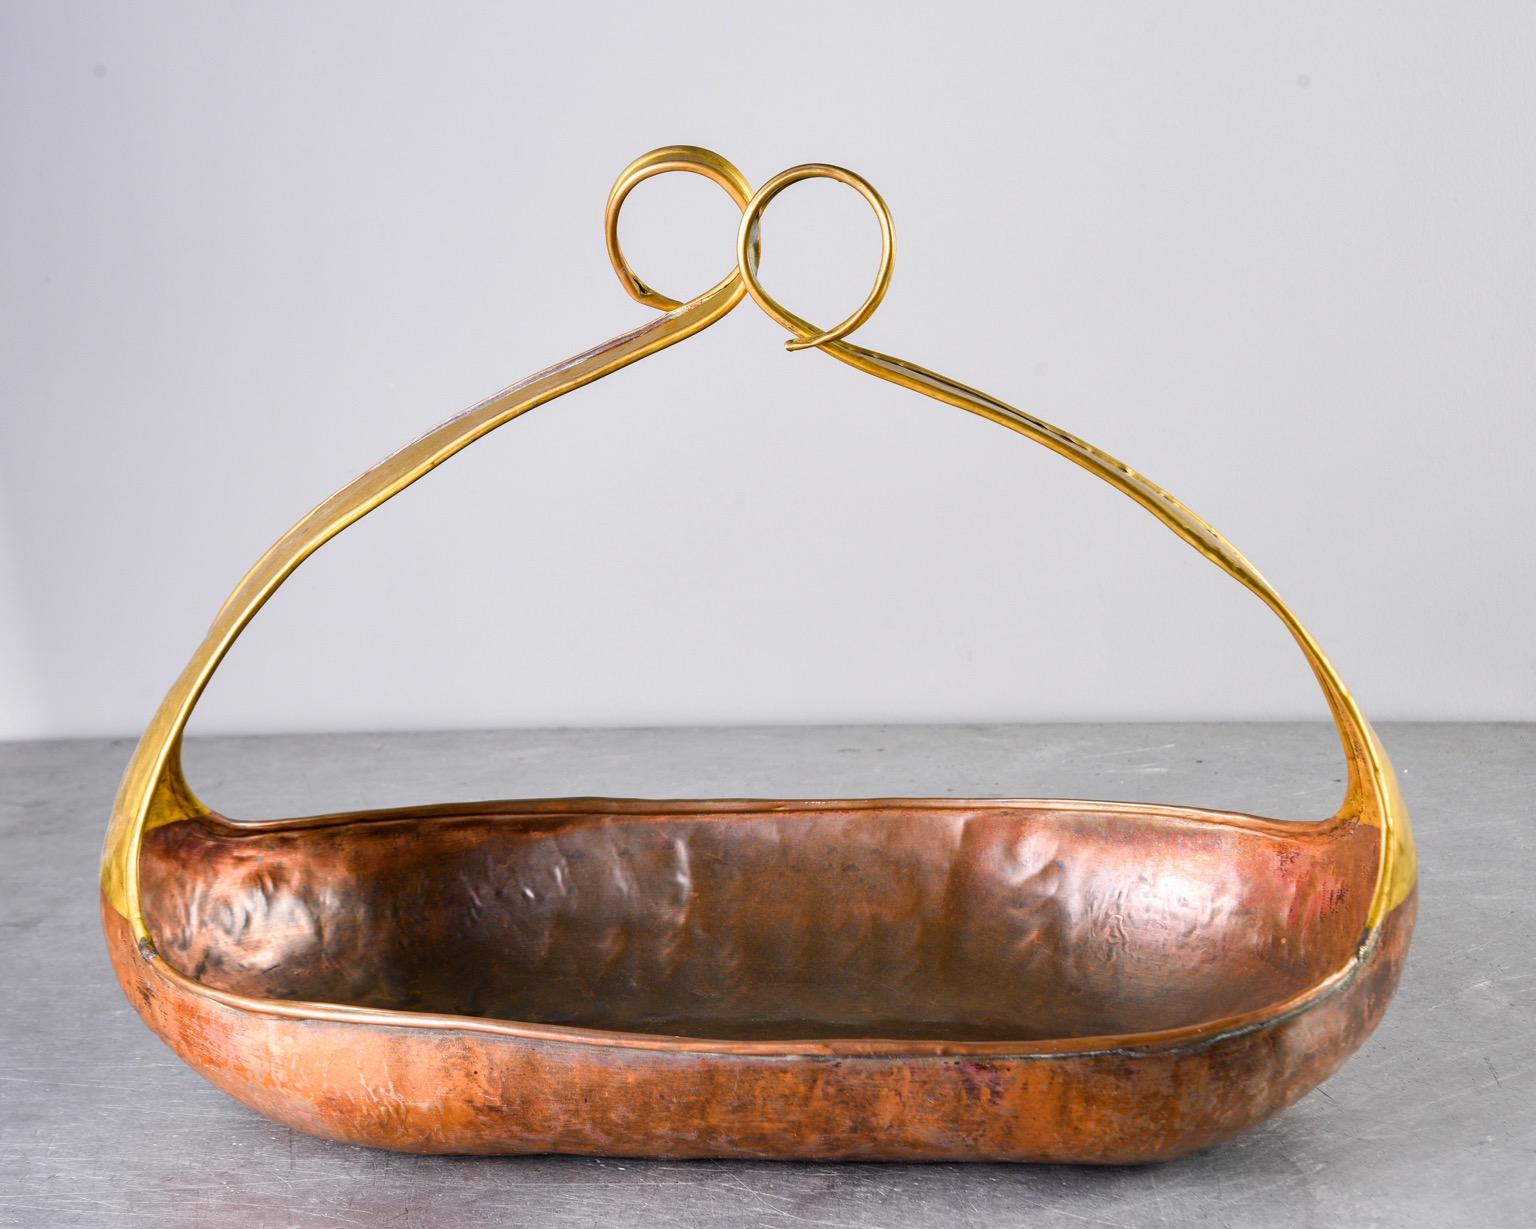 Grand bol en cuivre et laiton martelé, datant des années 1960, avec de hauts côtés effilés et des extrémités en volutes qui forment une anse en forme de panier. Fabricant inconnu. Trouvé en Italie.